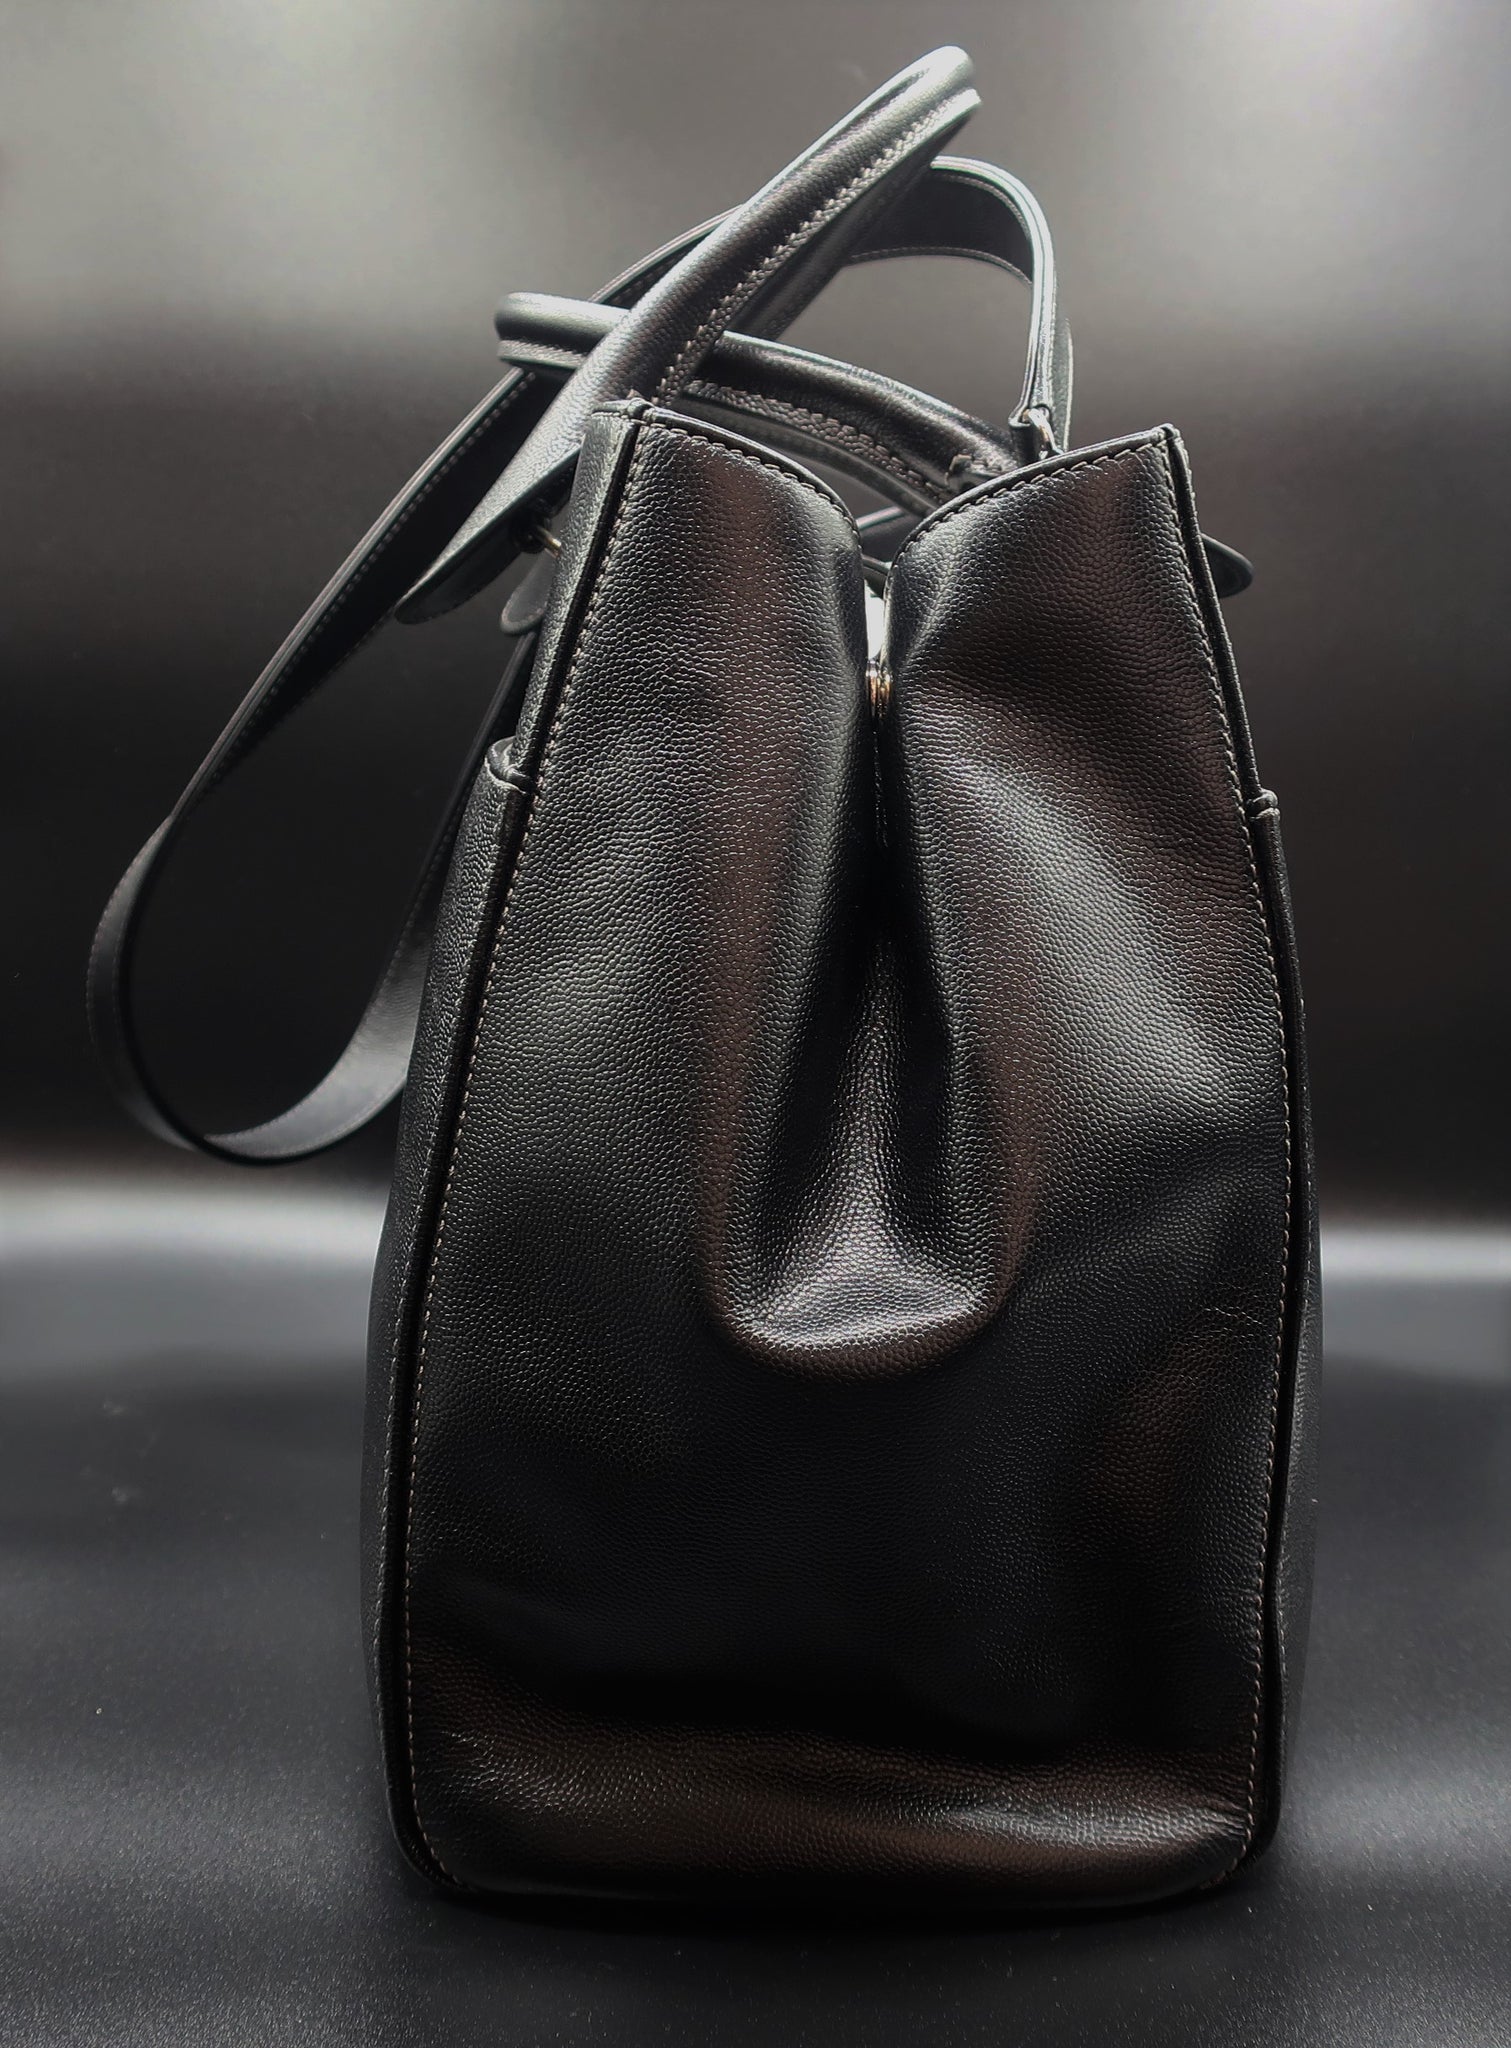 Chanel  executive  Chanel handbags Chanel bag Bags